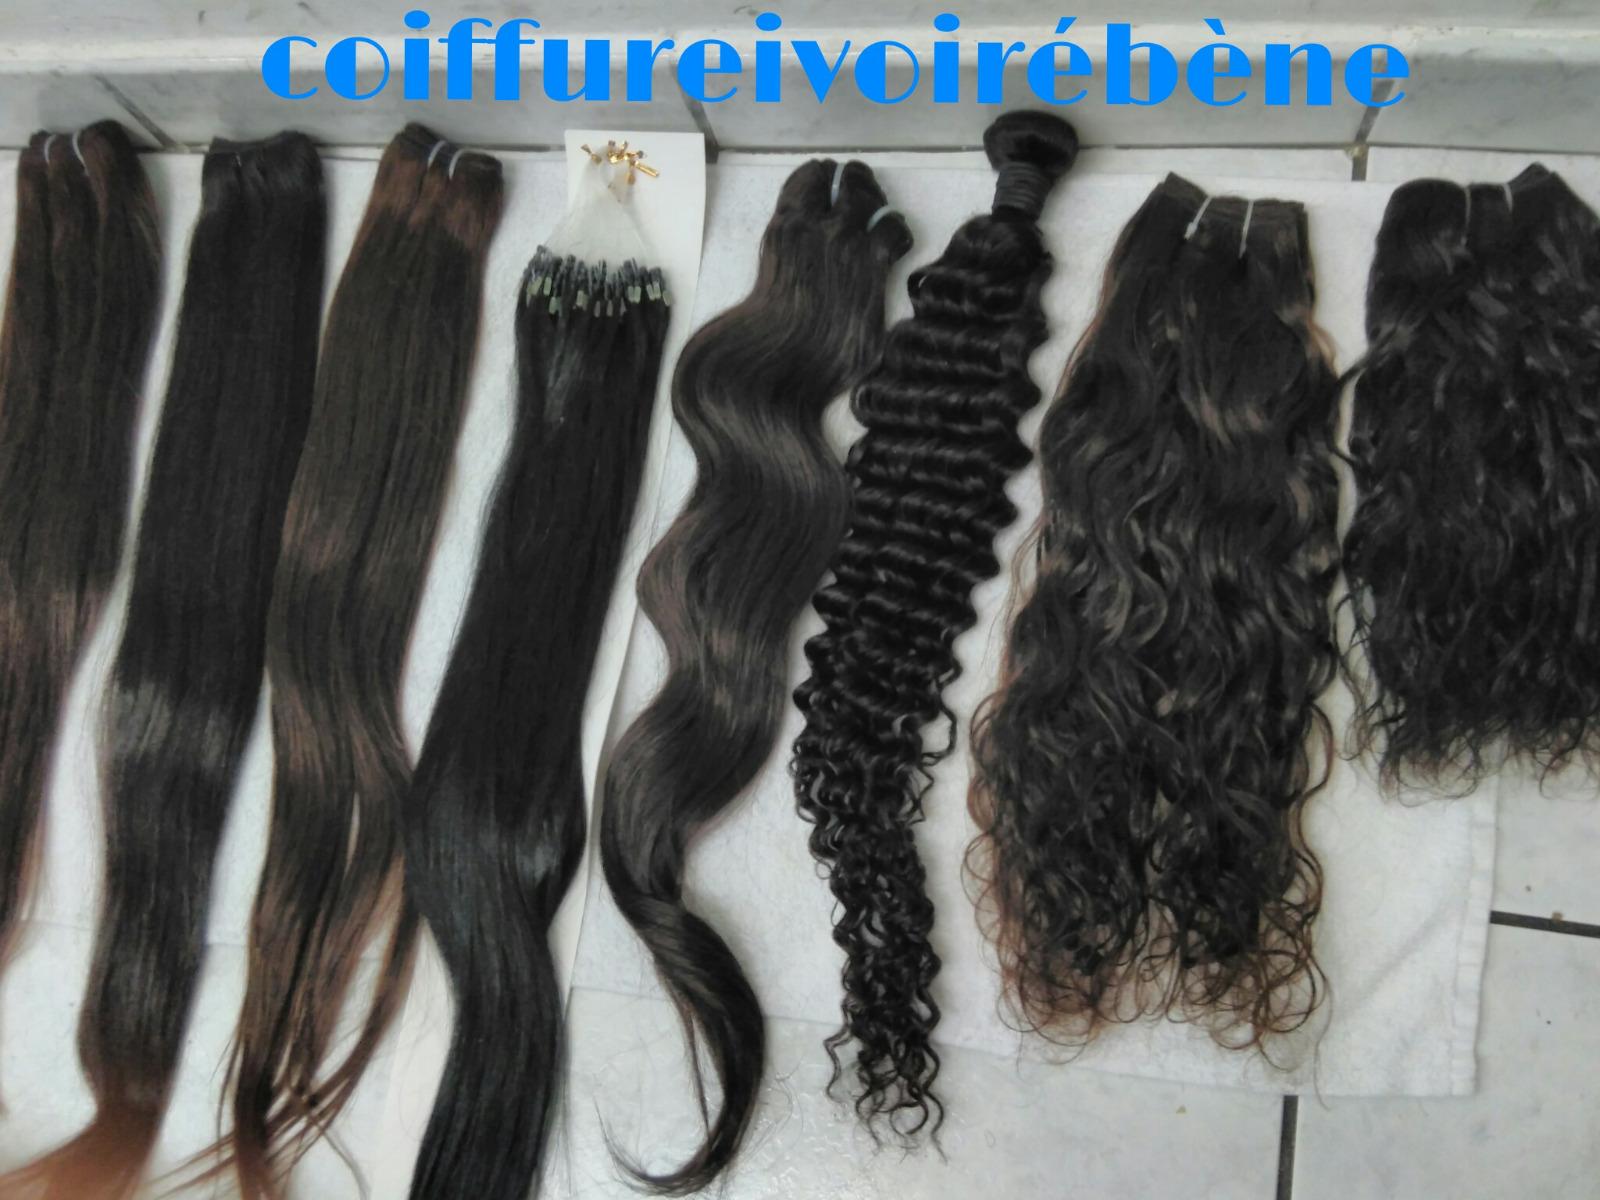 Cheveux naturels vierges 100% indiens toutes longueurs, raides, ondulés, bouclés , frisés . Du 8 pouces au 30 (Peut être colorés ) pouces